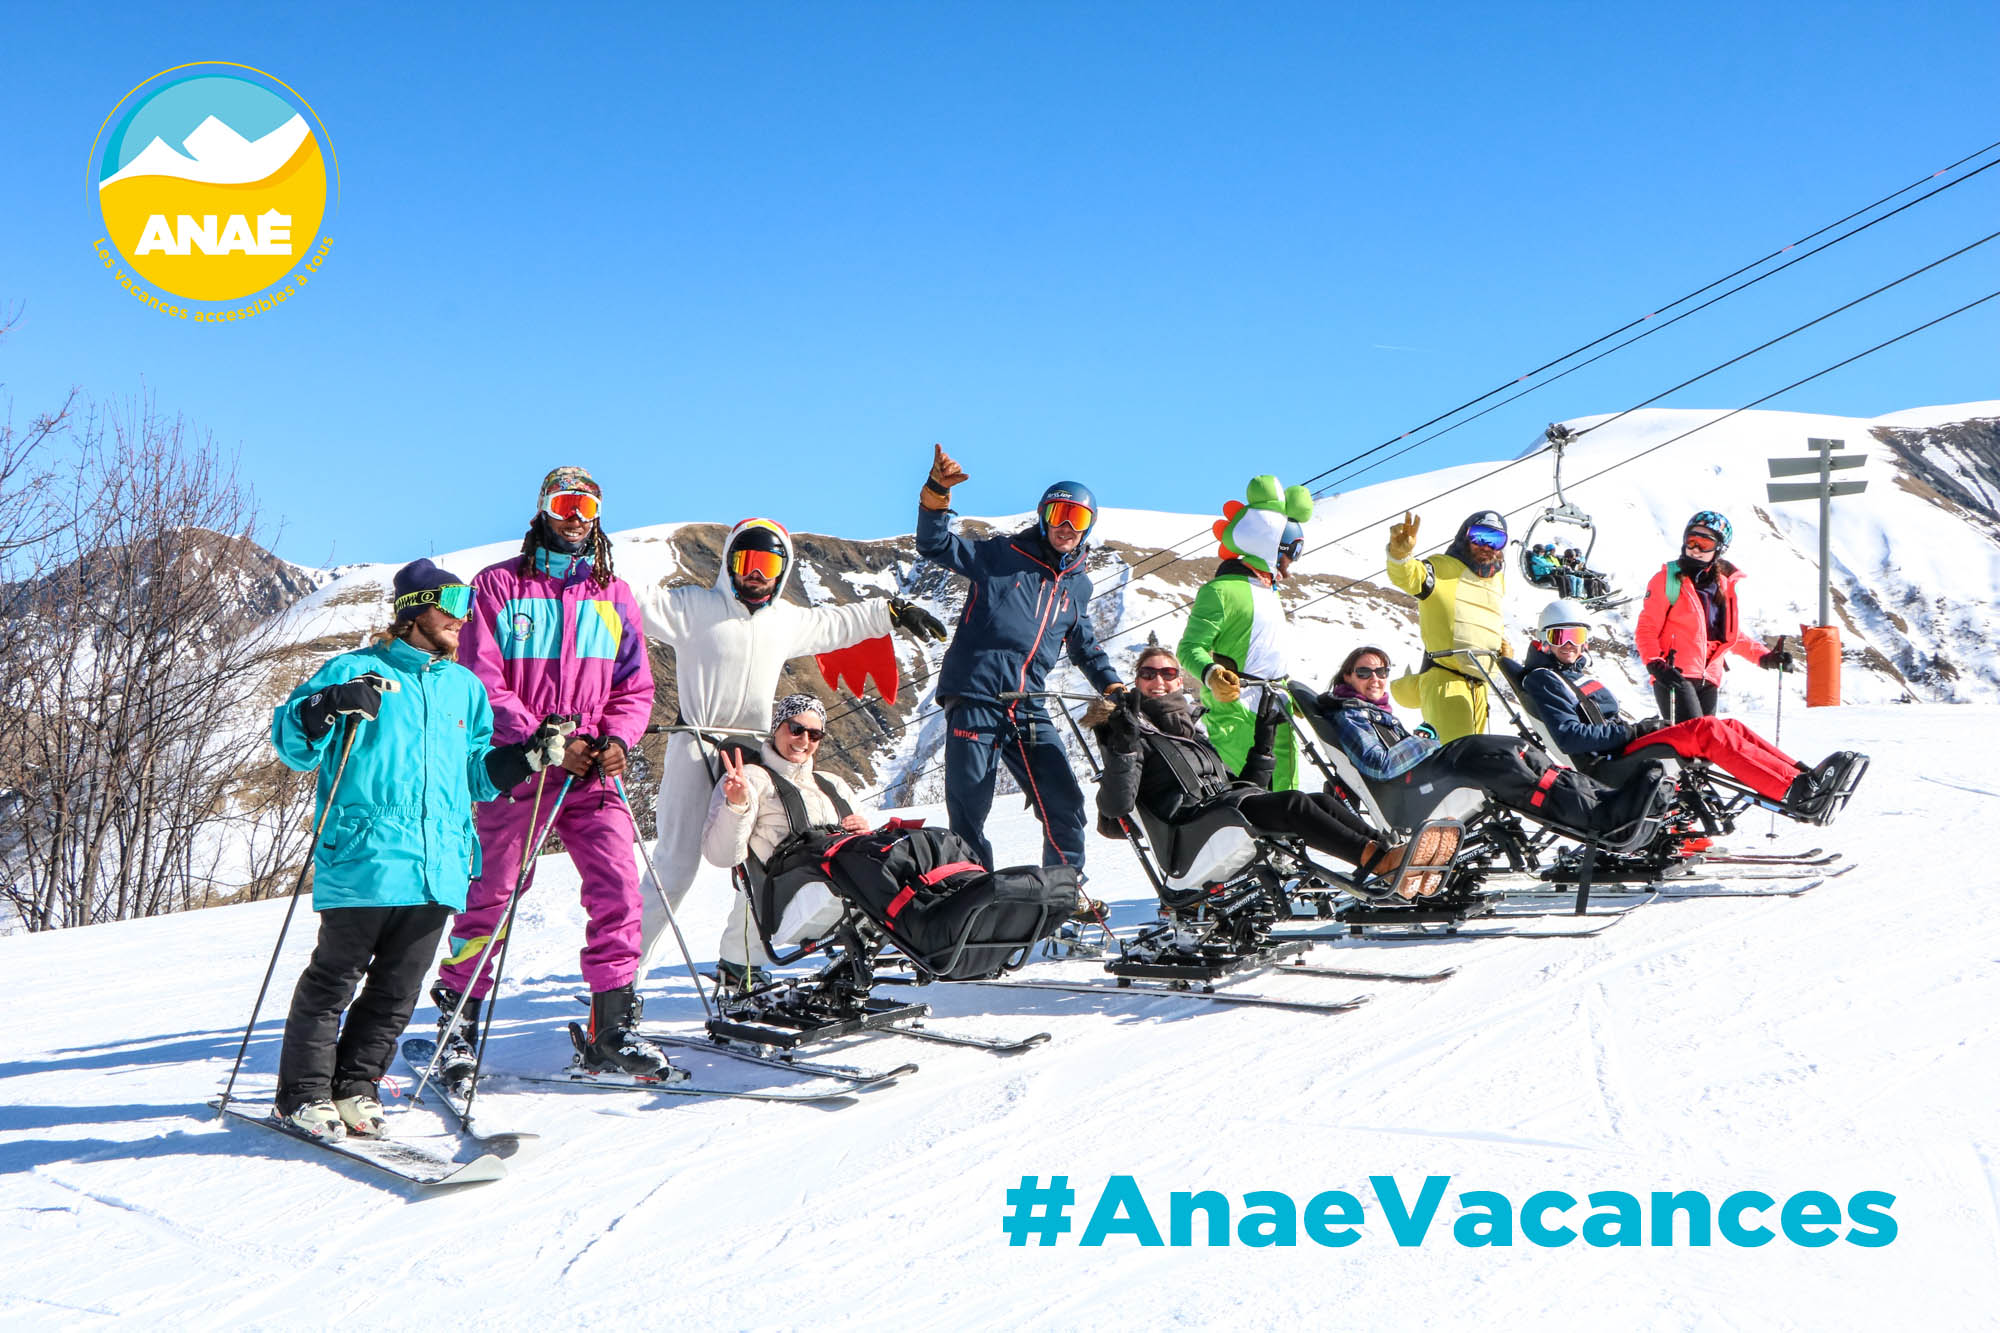 Séjour adapté handicap moteur à la montagne avec Anaé Vacances en Savoie. Un groupe de vacanciers à mobilité réduite fait du ski assis avec leurs moniteurs.